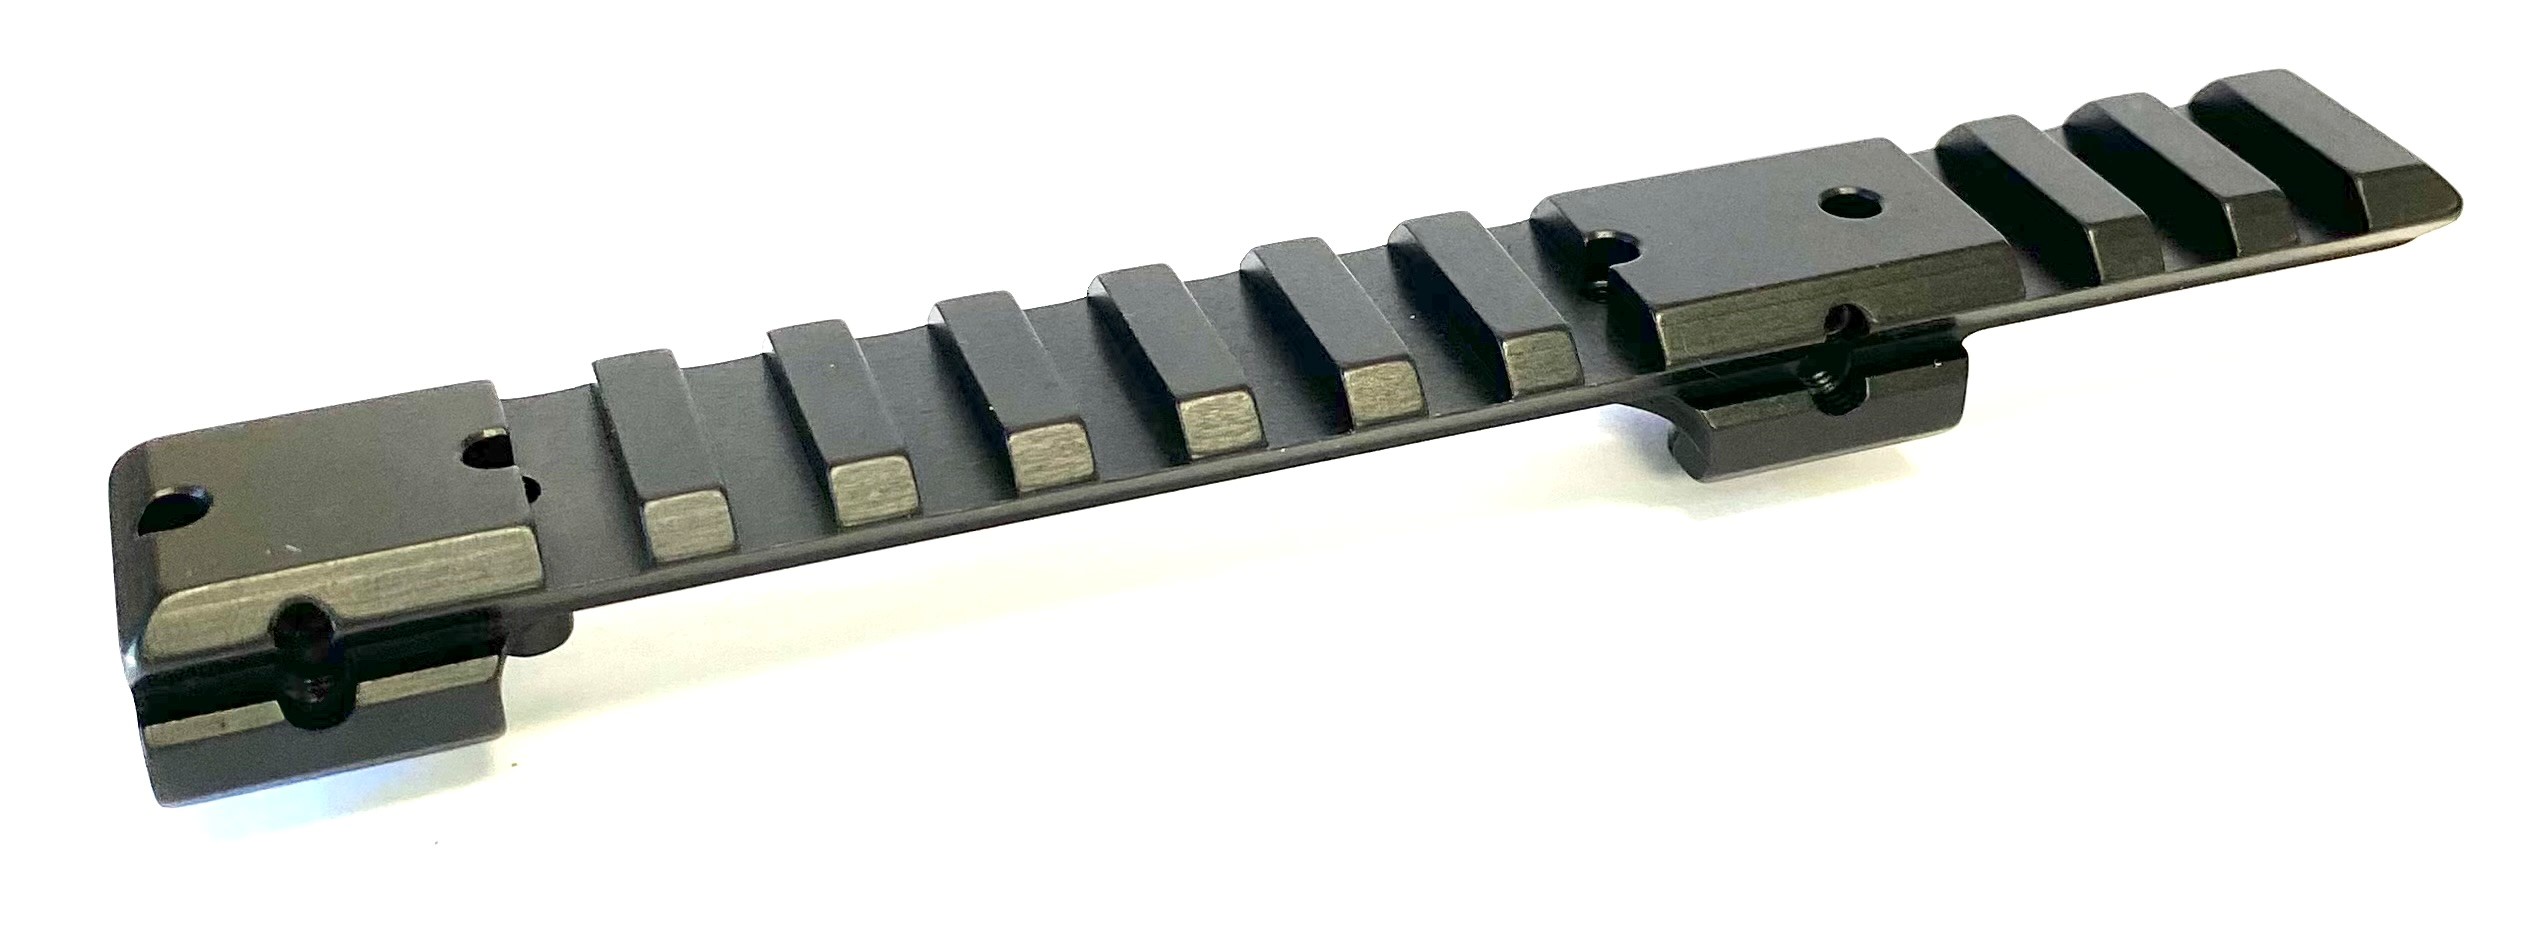 Recknagel Picatinny Rail for 11mm Bases